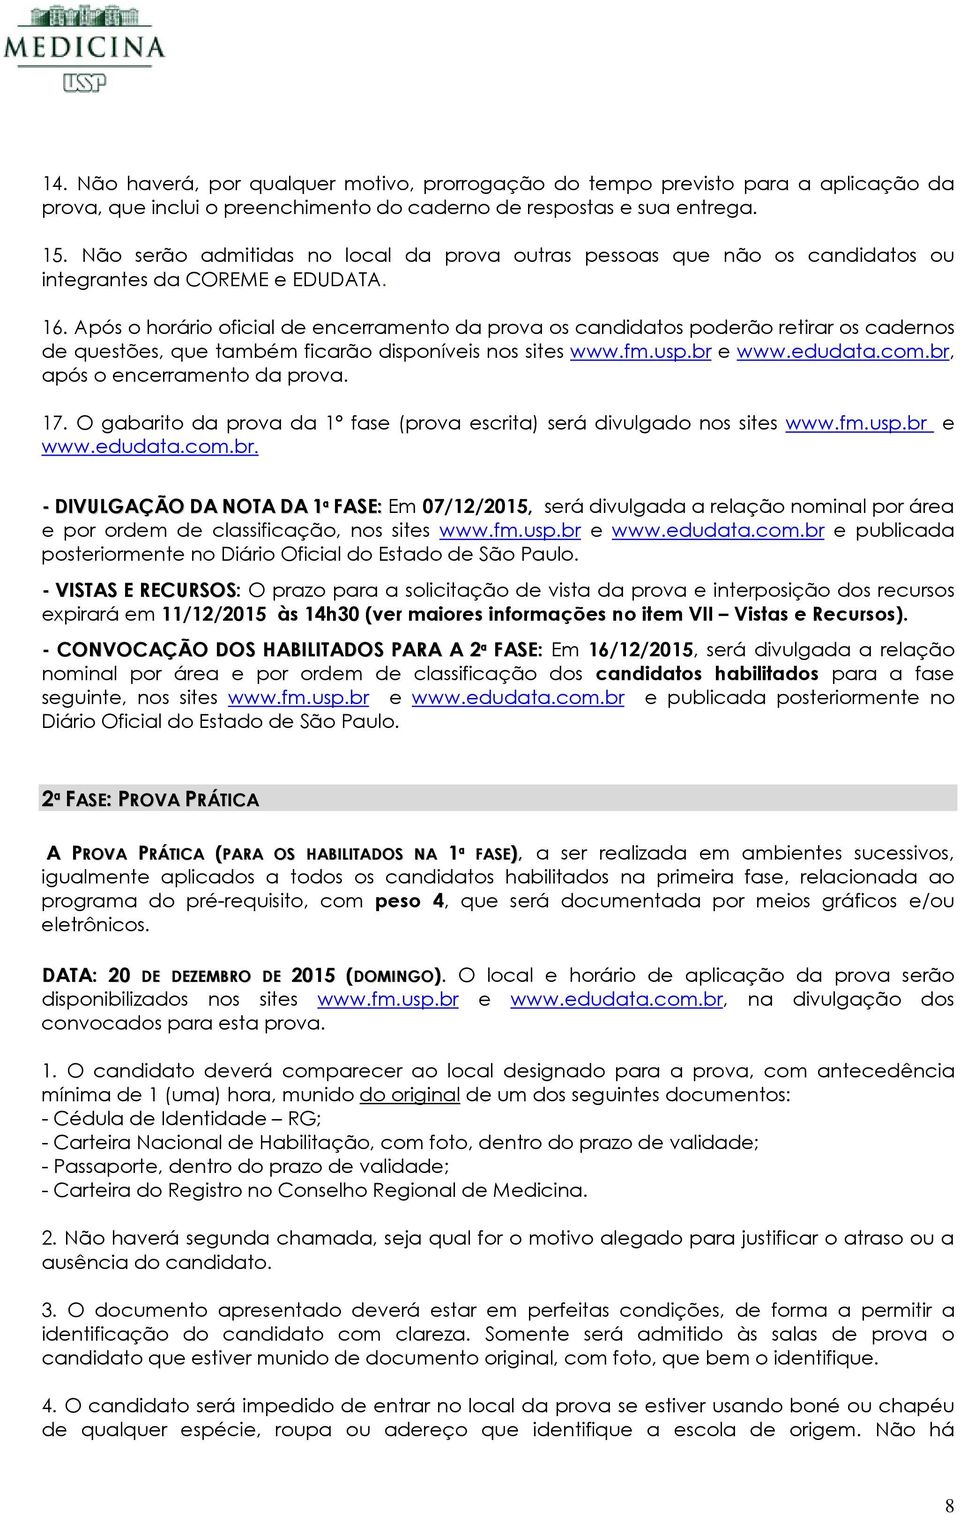 Após o horário oficial de encerramento da prova os candidatos poderão retirar os cadernos de questões, que também ficarão disponíveis nos sites www.fm.usp.br e www.edudata.com.